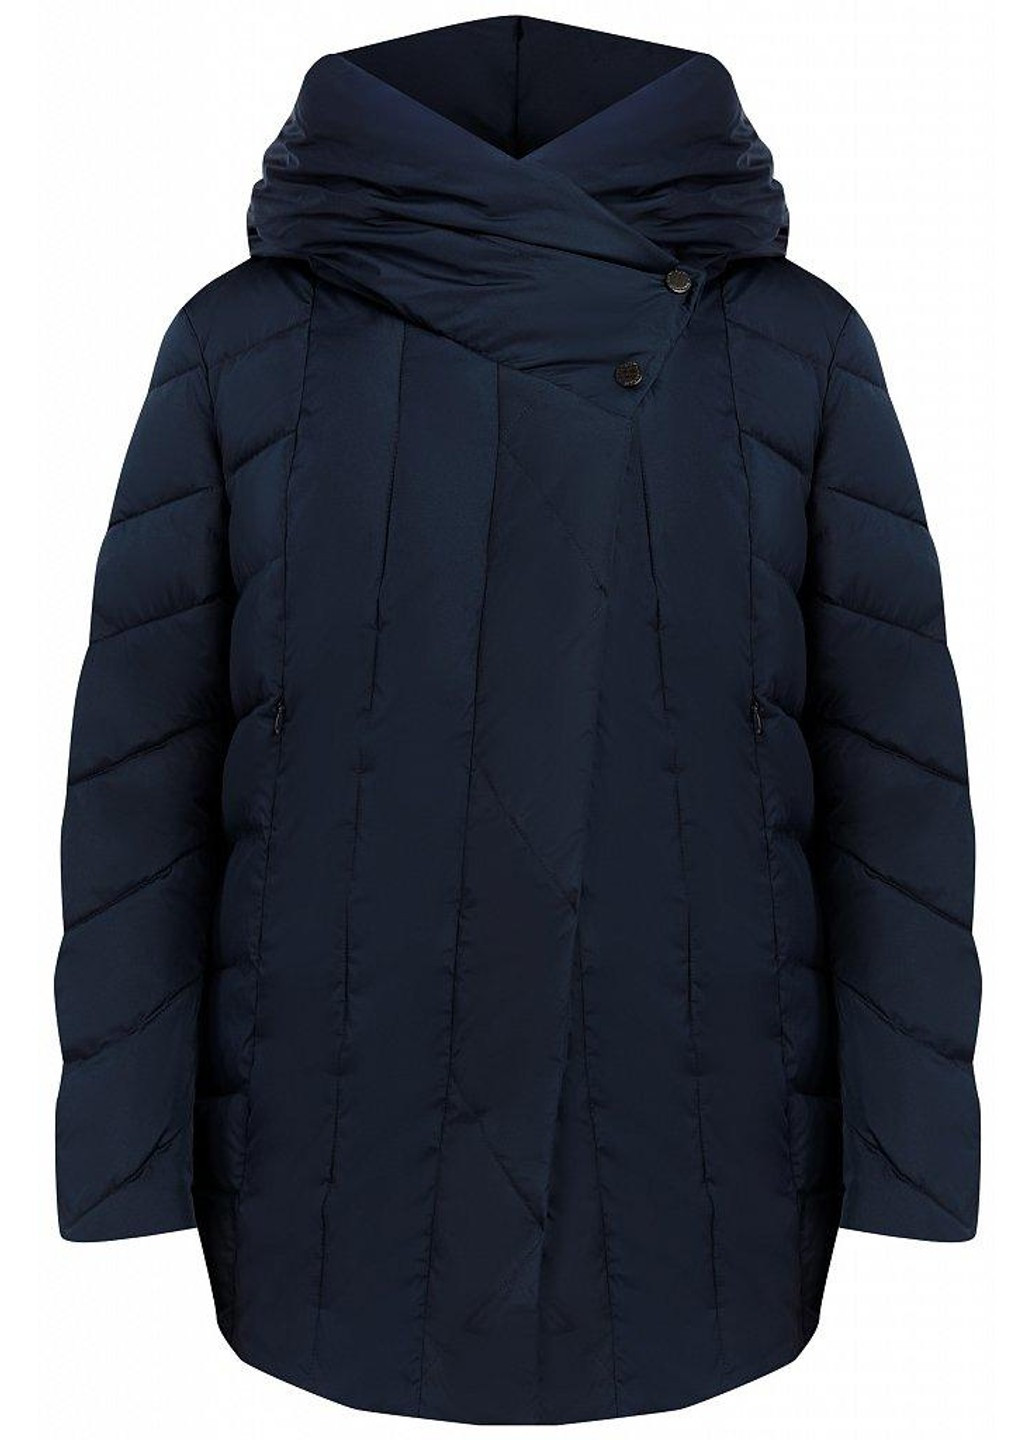 Темно-синяя зимняя зимняя куртка w19-11005-101 Finn Flare